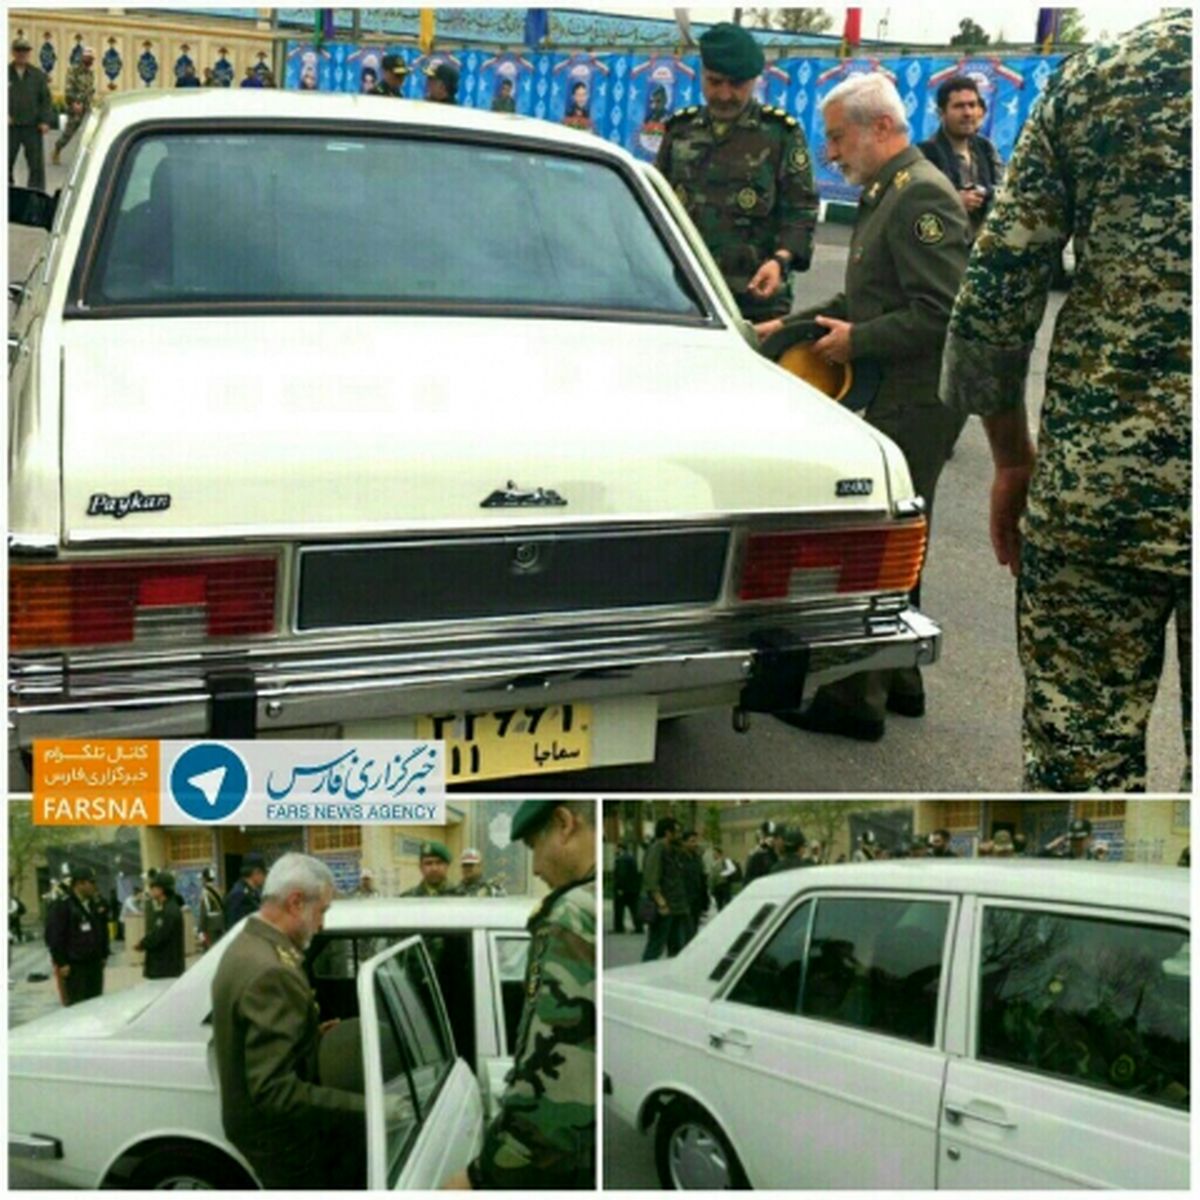 حضور فرمانده ارتش با خودرو پیکان در مراسم سالگرد شهید صیاد شیرازی